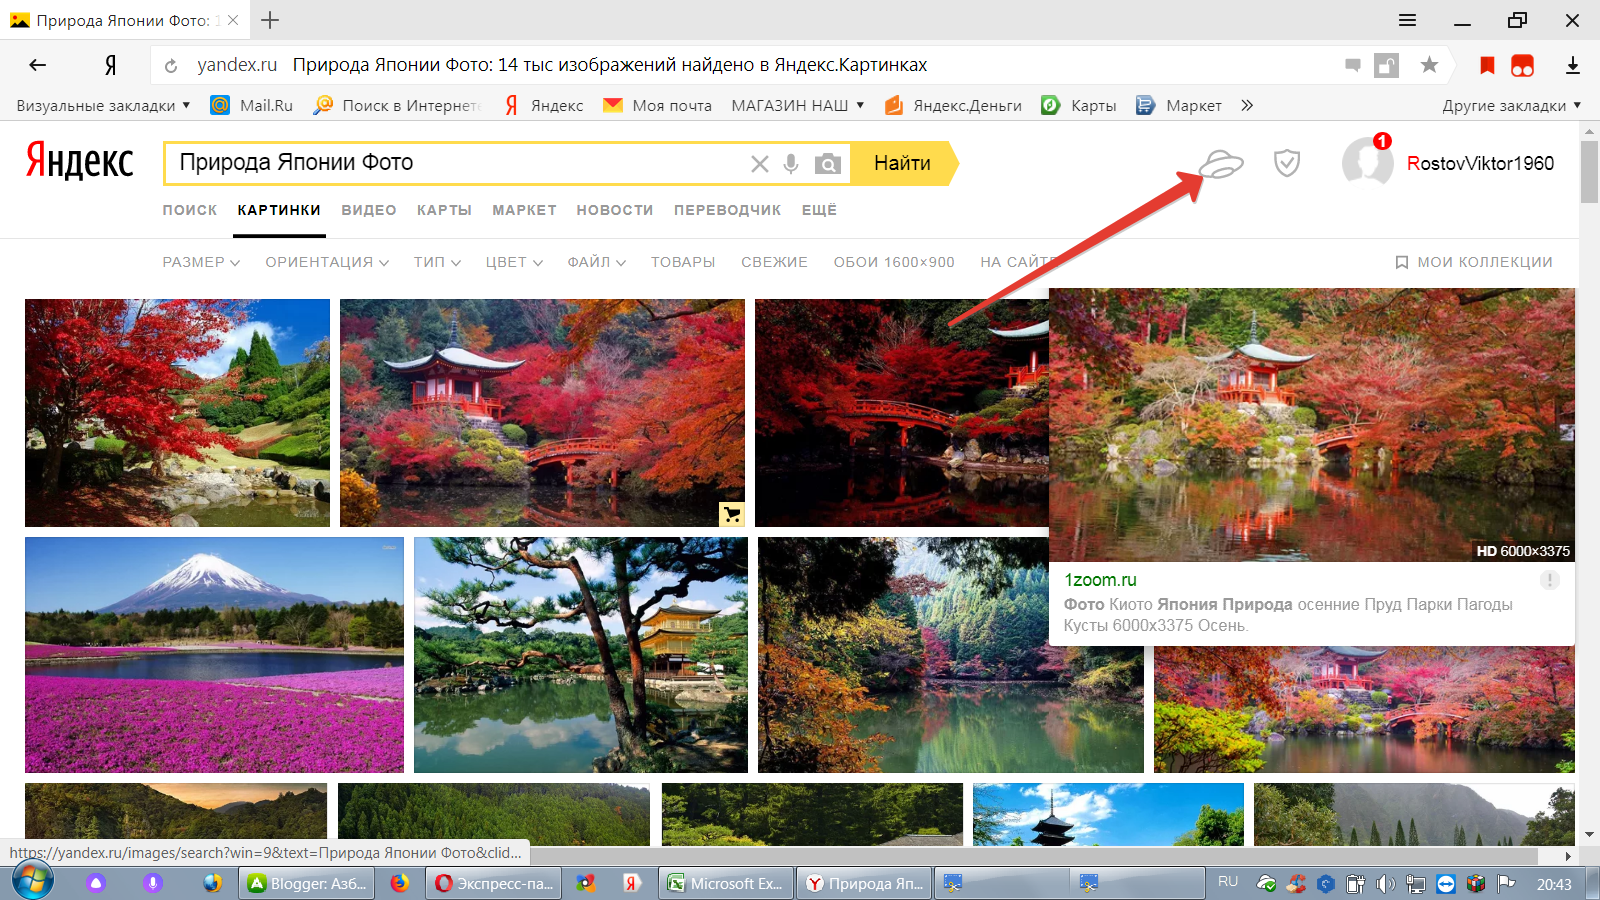 Узнать по картинке. Искать похожие изображения по картинке. Яндекс картинки. Яндекс картинки поиск. Поиск по картинке Яндекс.